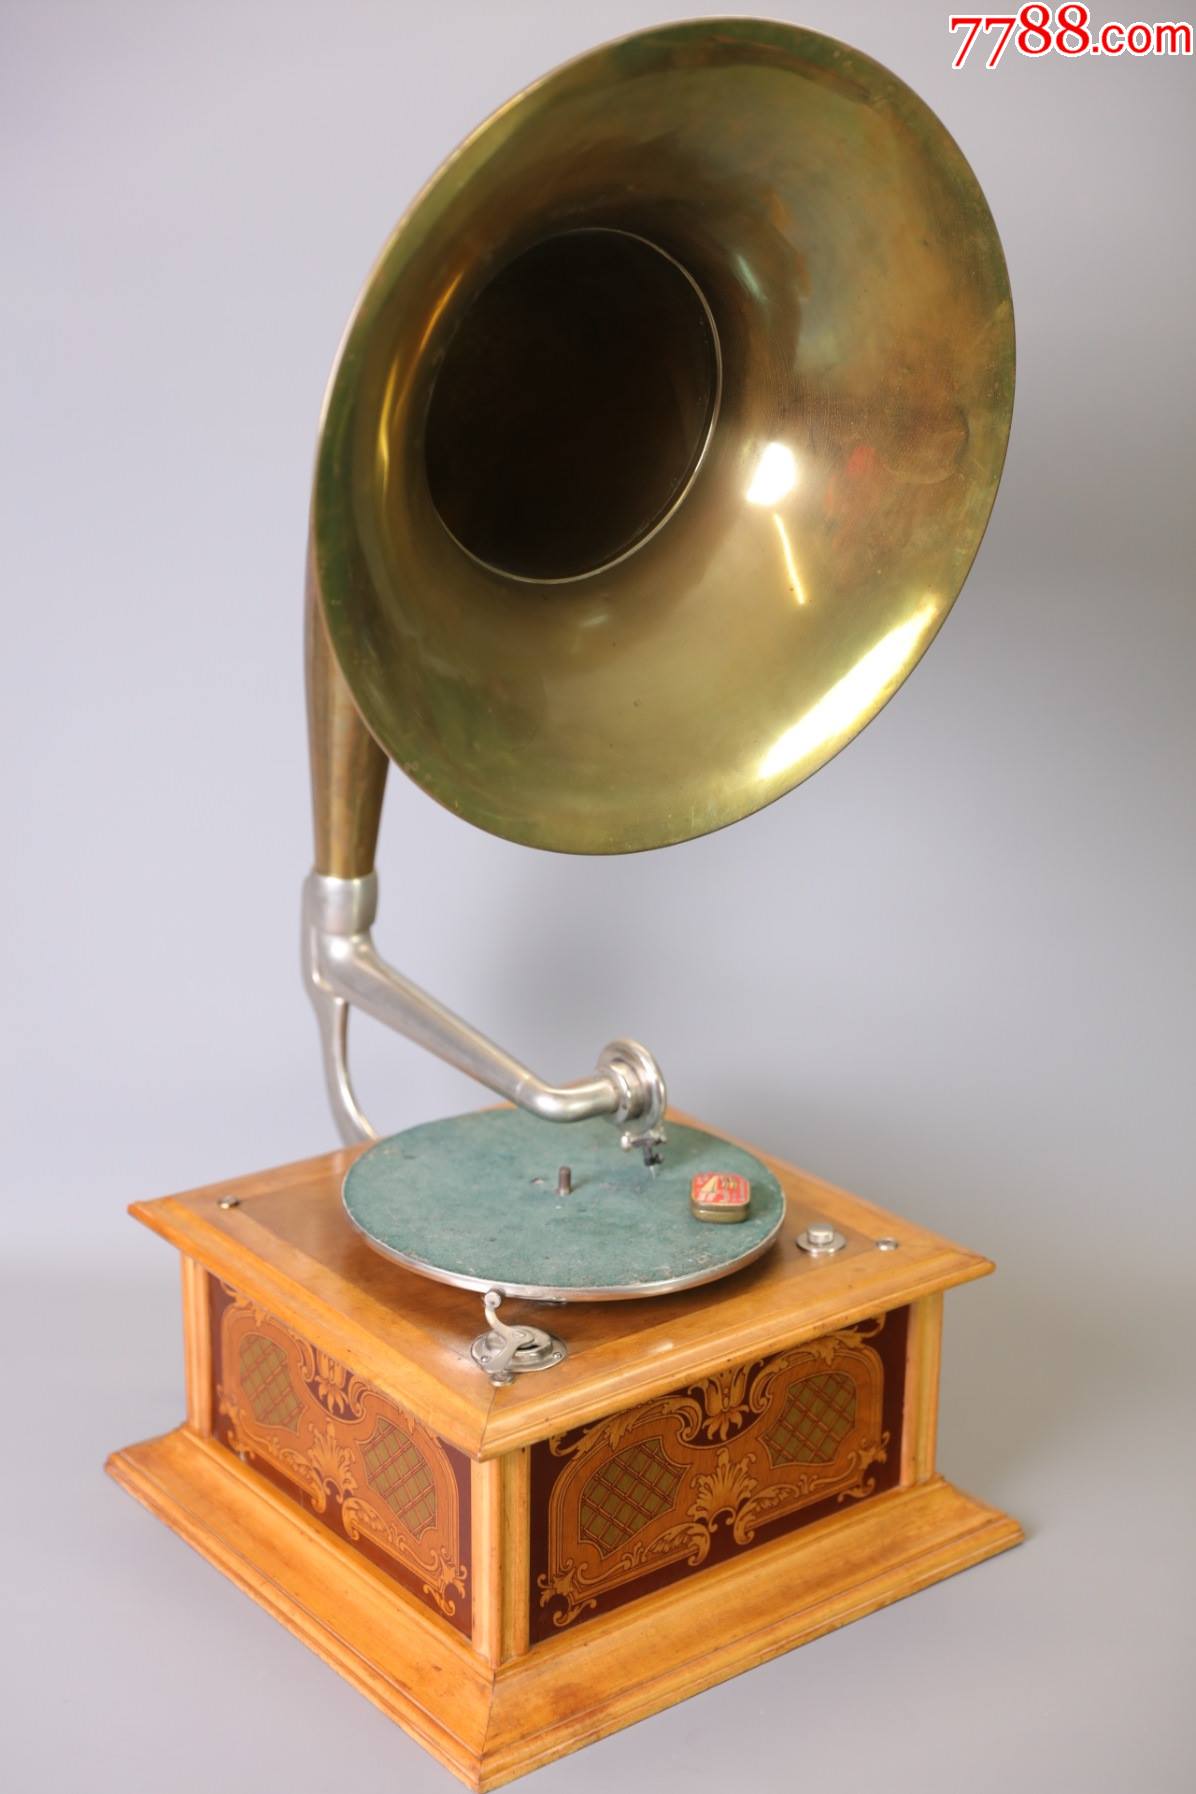 上世纪初瑞士全铜大喇叭古董机械手摇留声机老唱机单机芯驱动